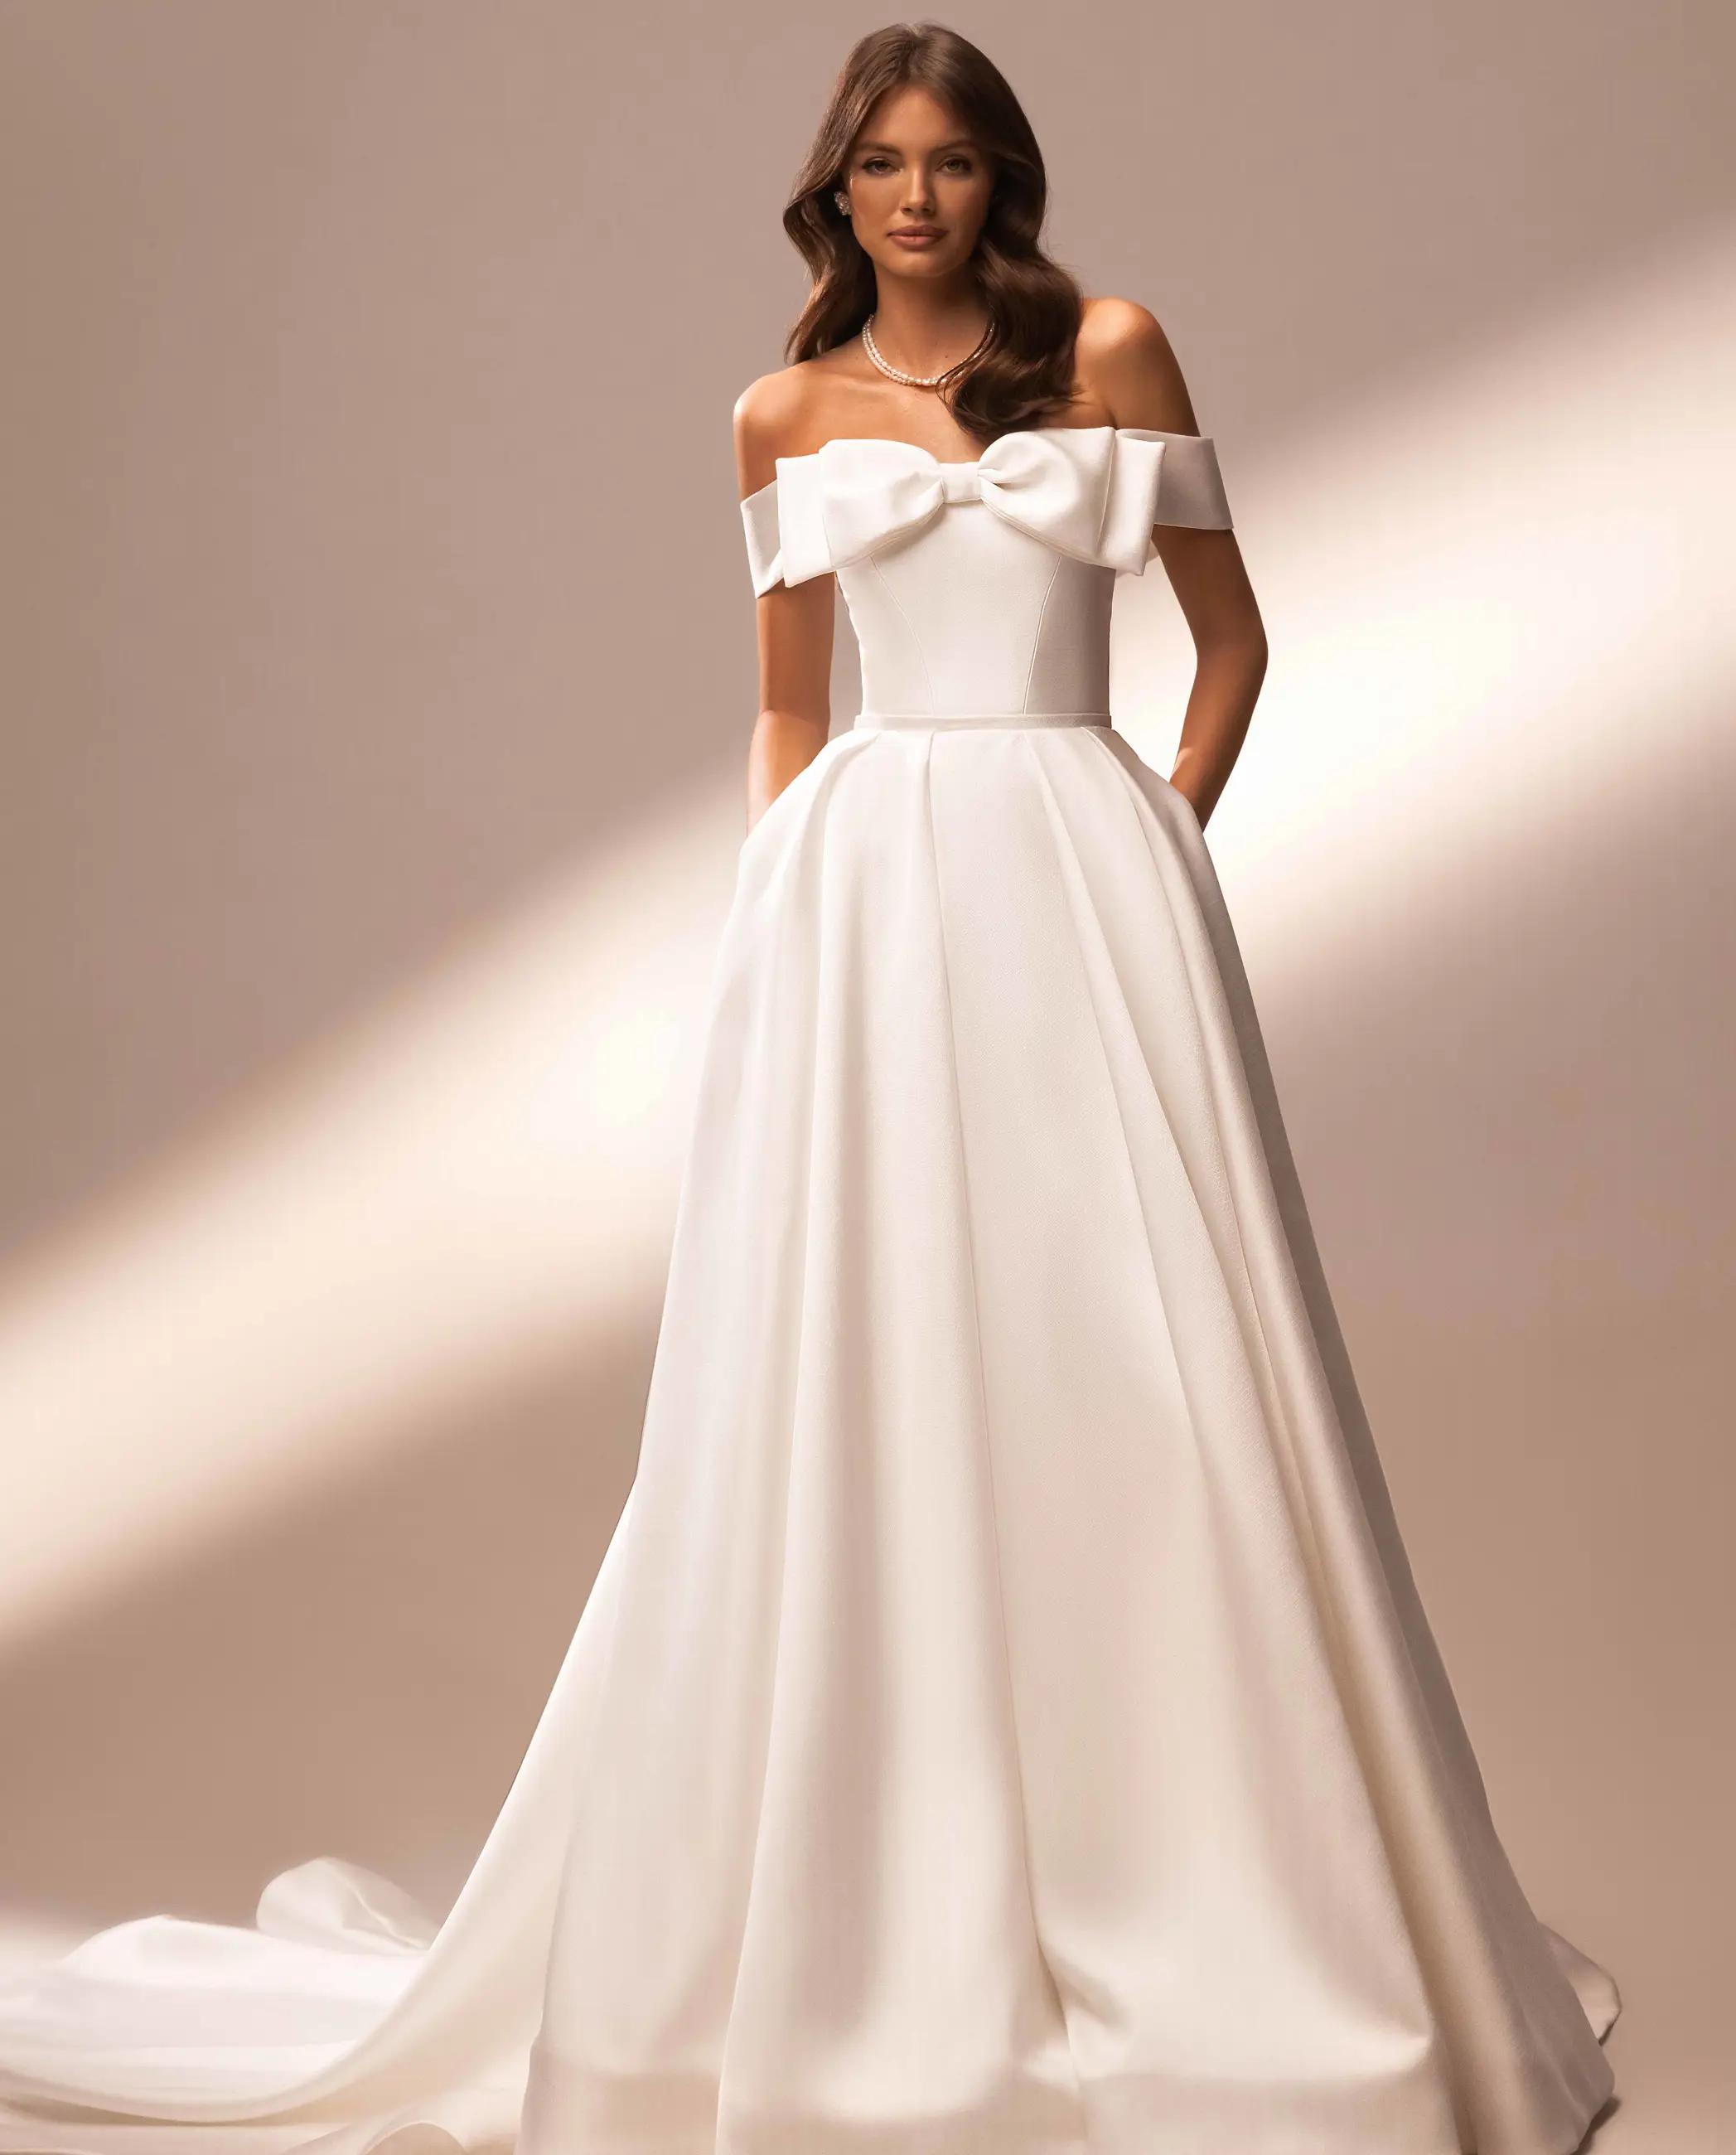 Model wearing a white Katy Corso Dress